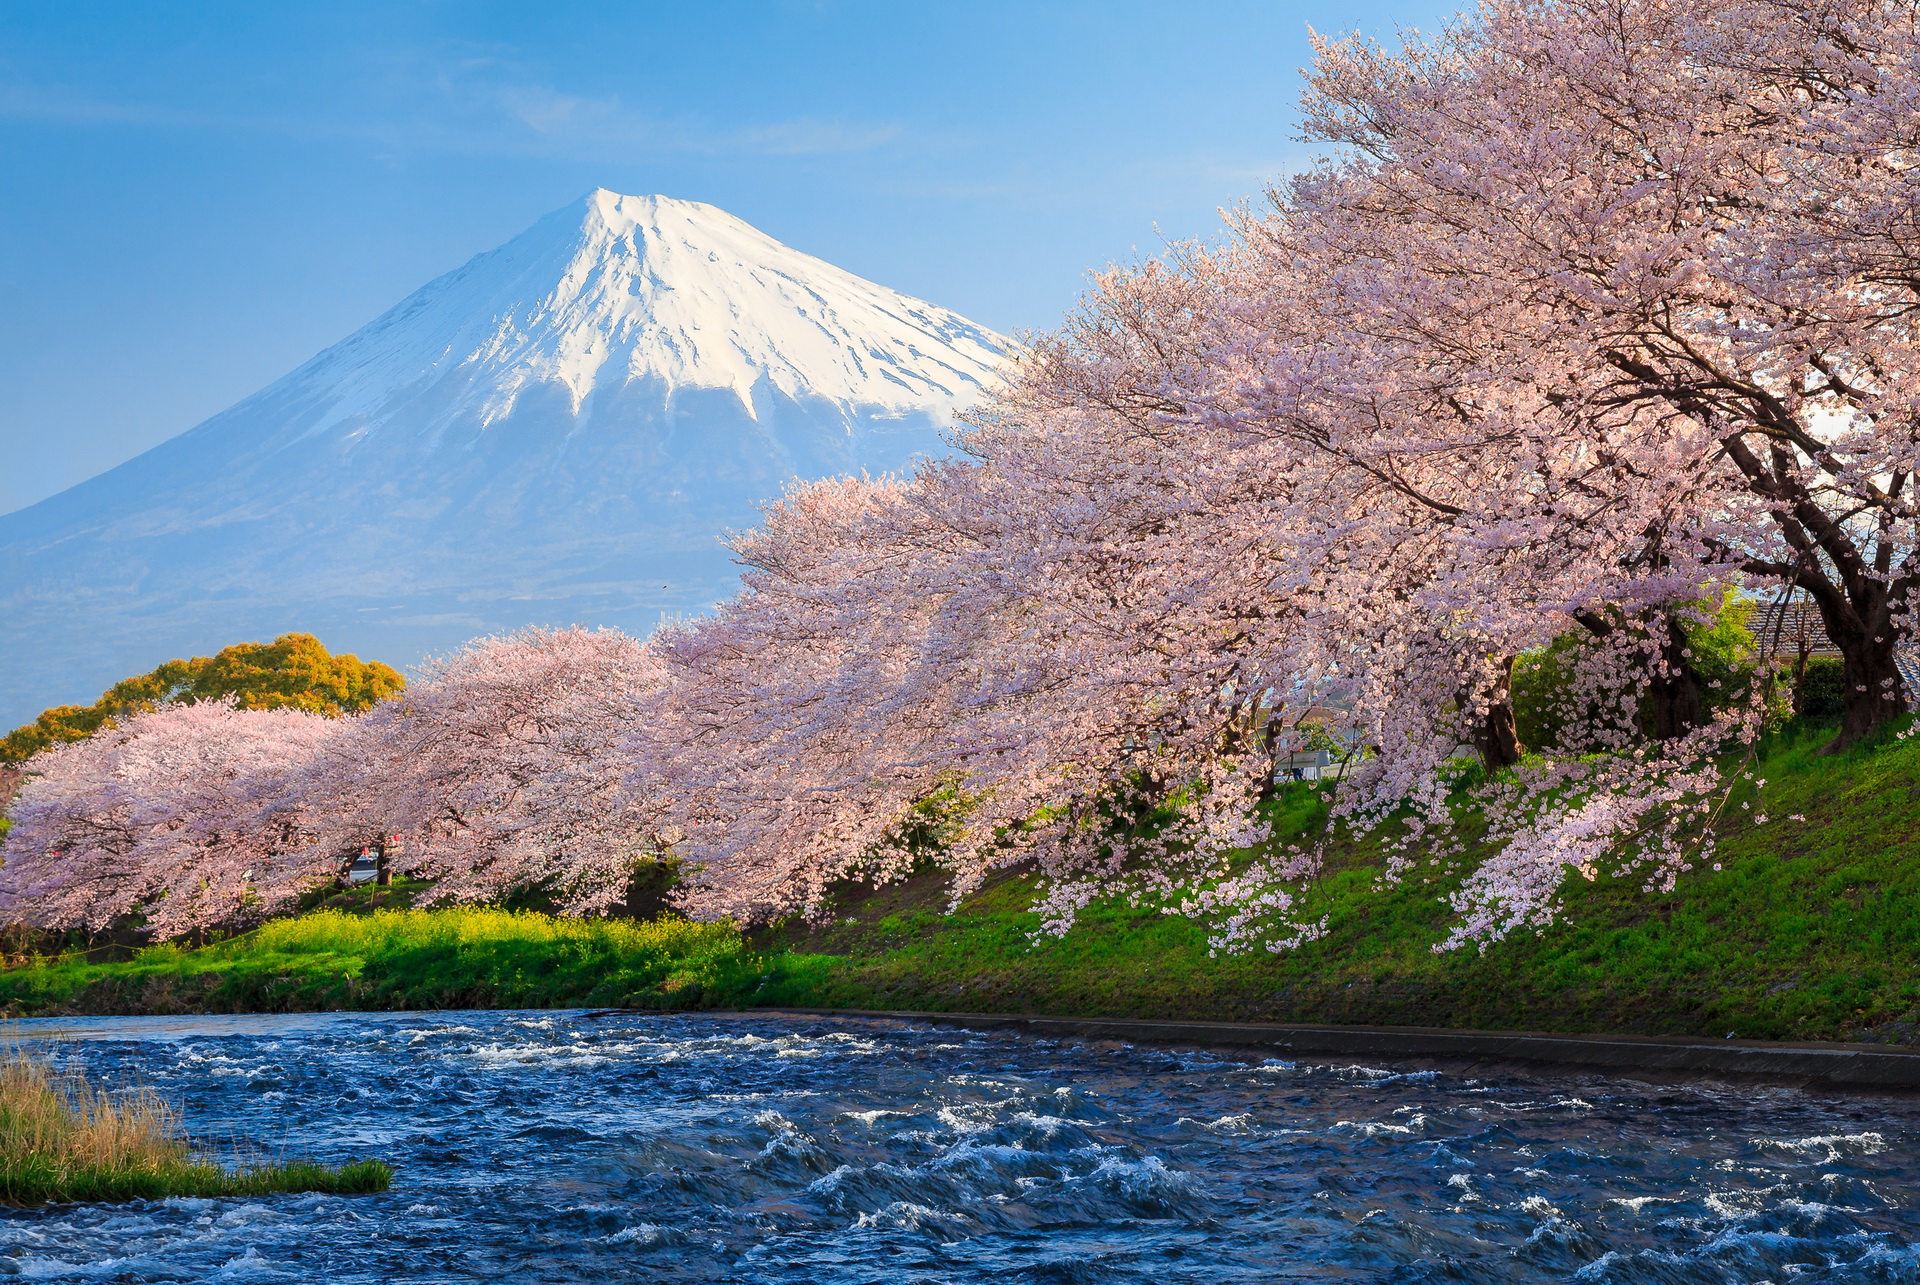 цветение кленов в японии